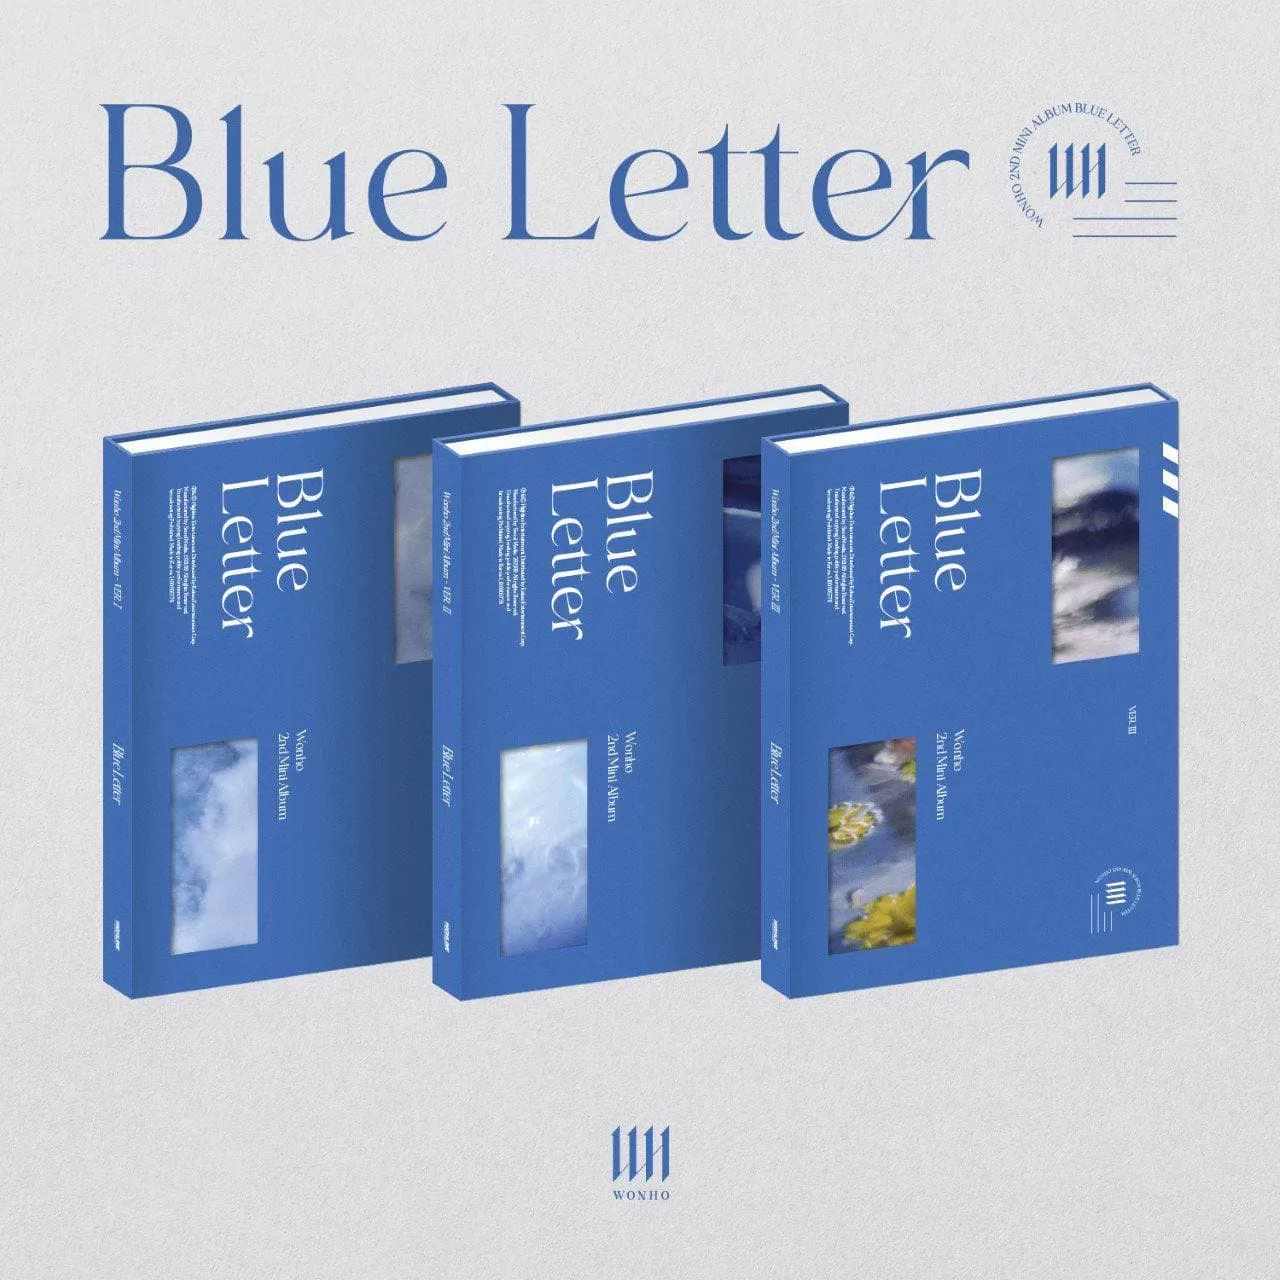 دانلود آلبوم جدید WONHO به نام Blue Letter